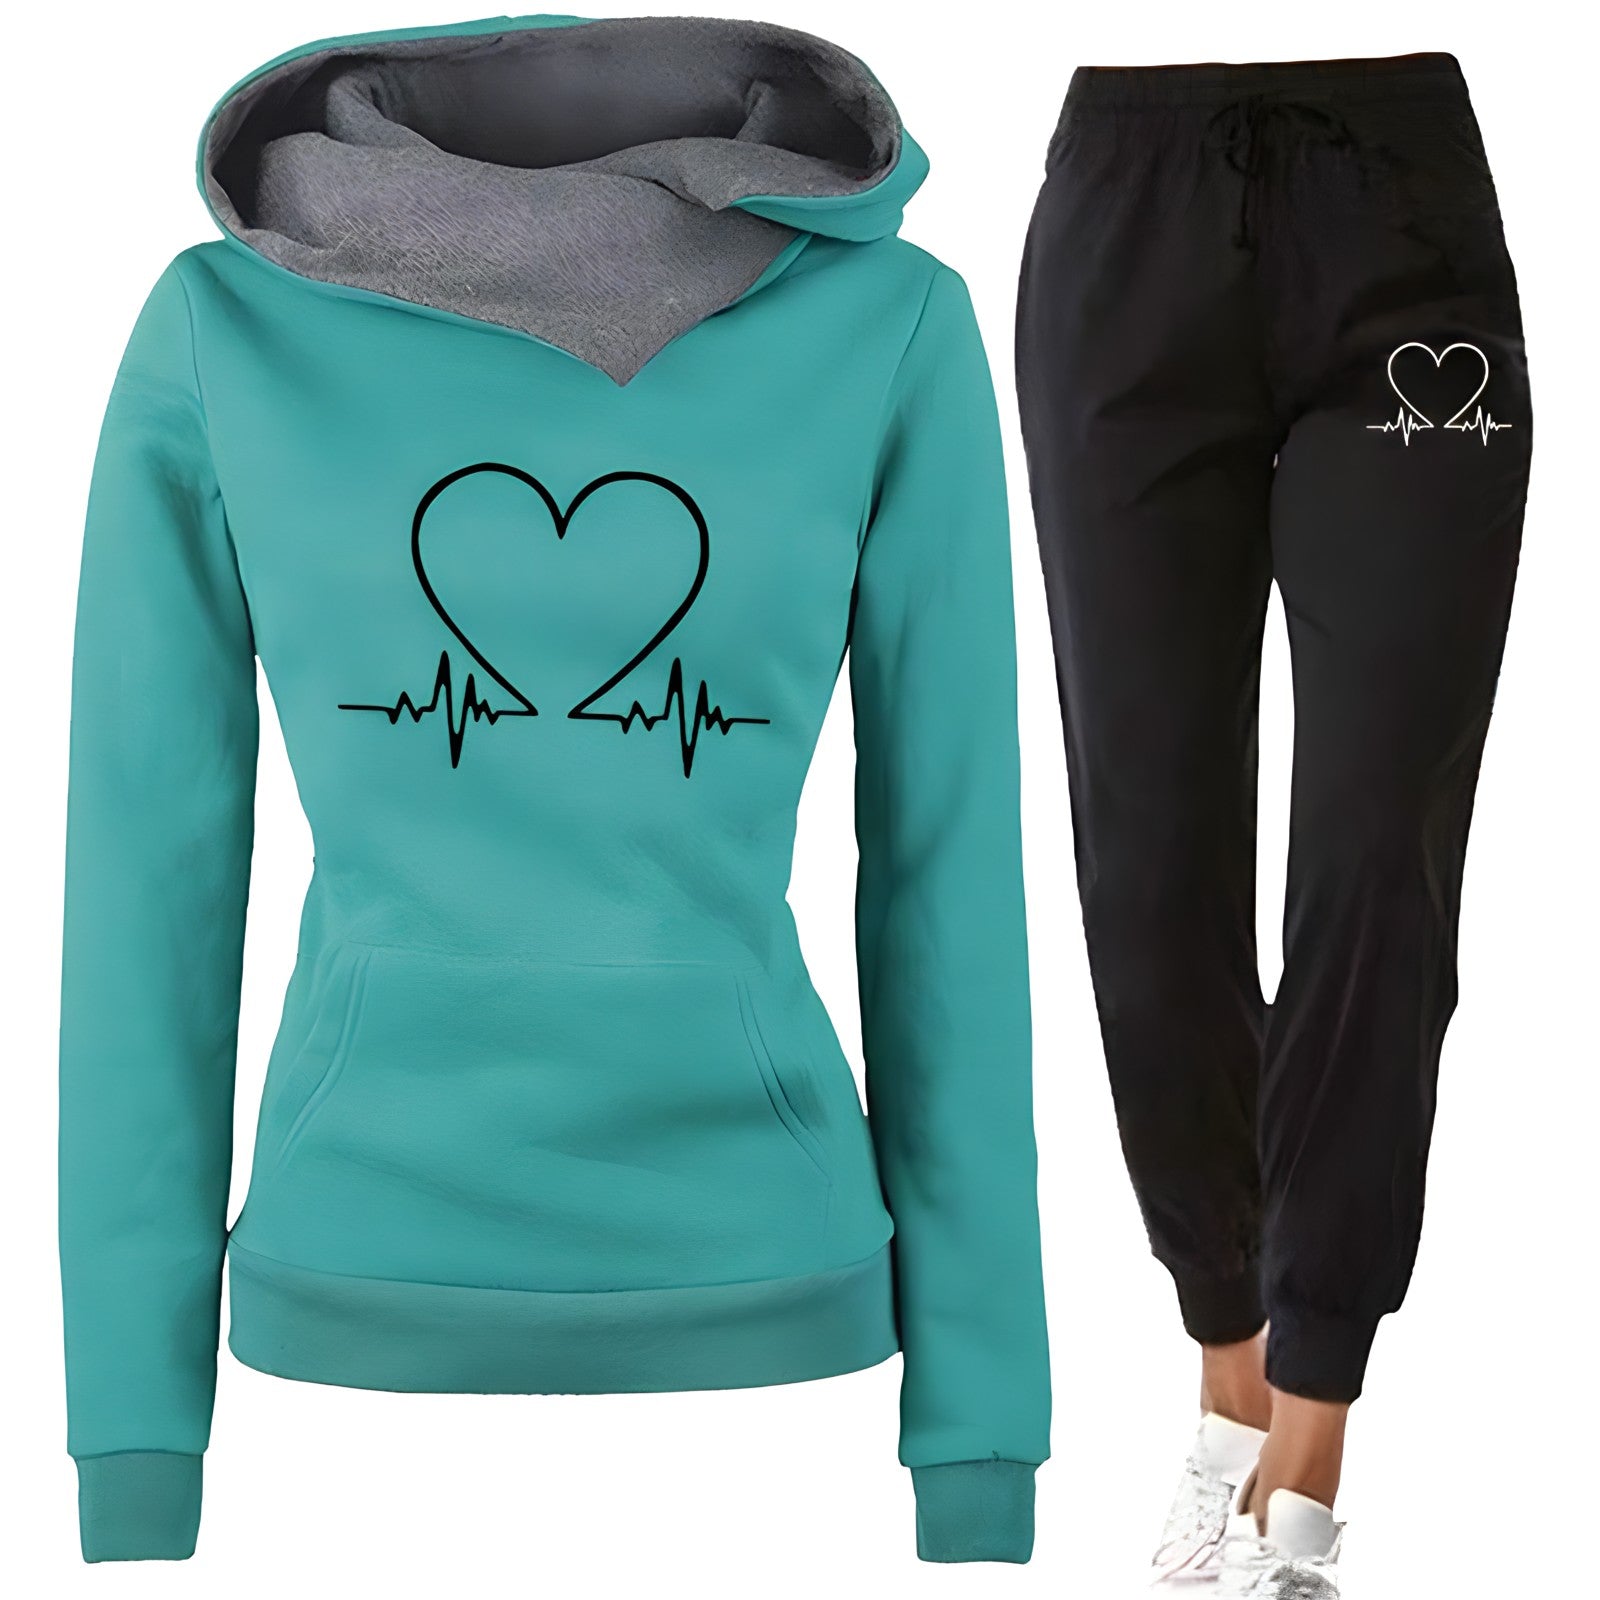 Laure - Cozy and warm jogging suit